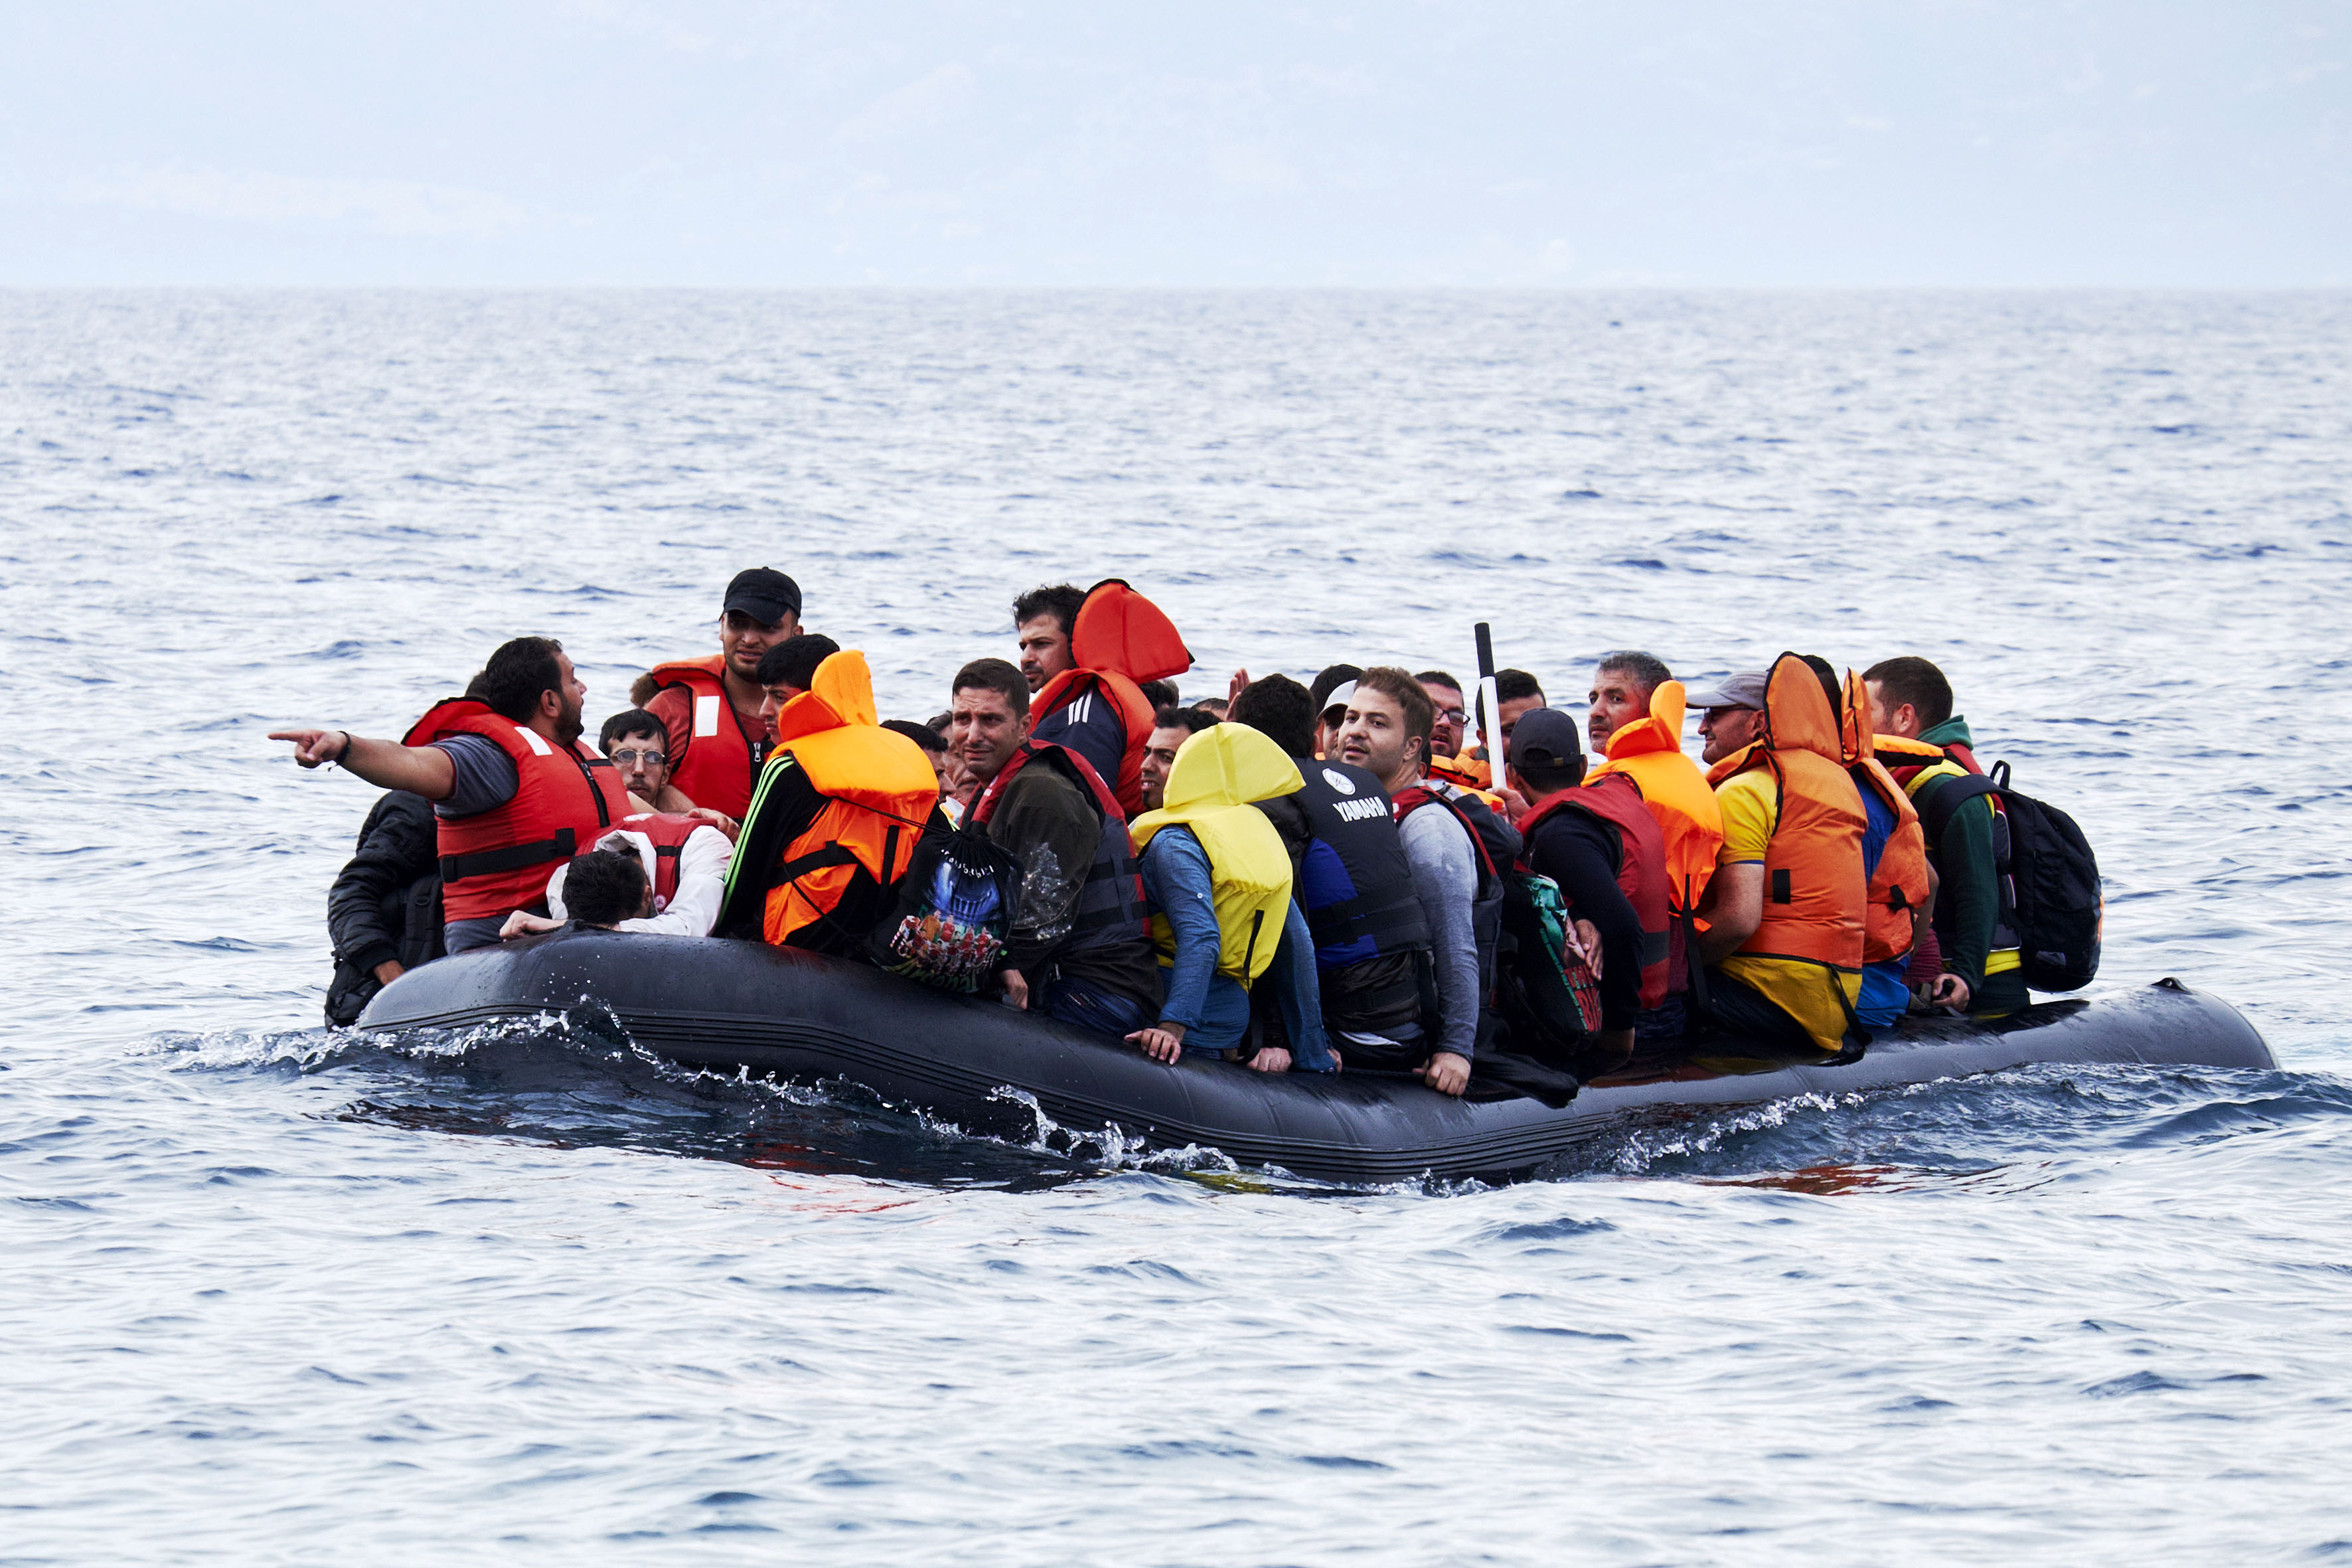 Kind van 1 jaar zonder ouders op migrantenboot bij Italië aangekomen, bootje